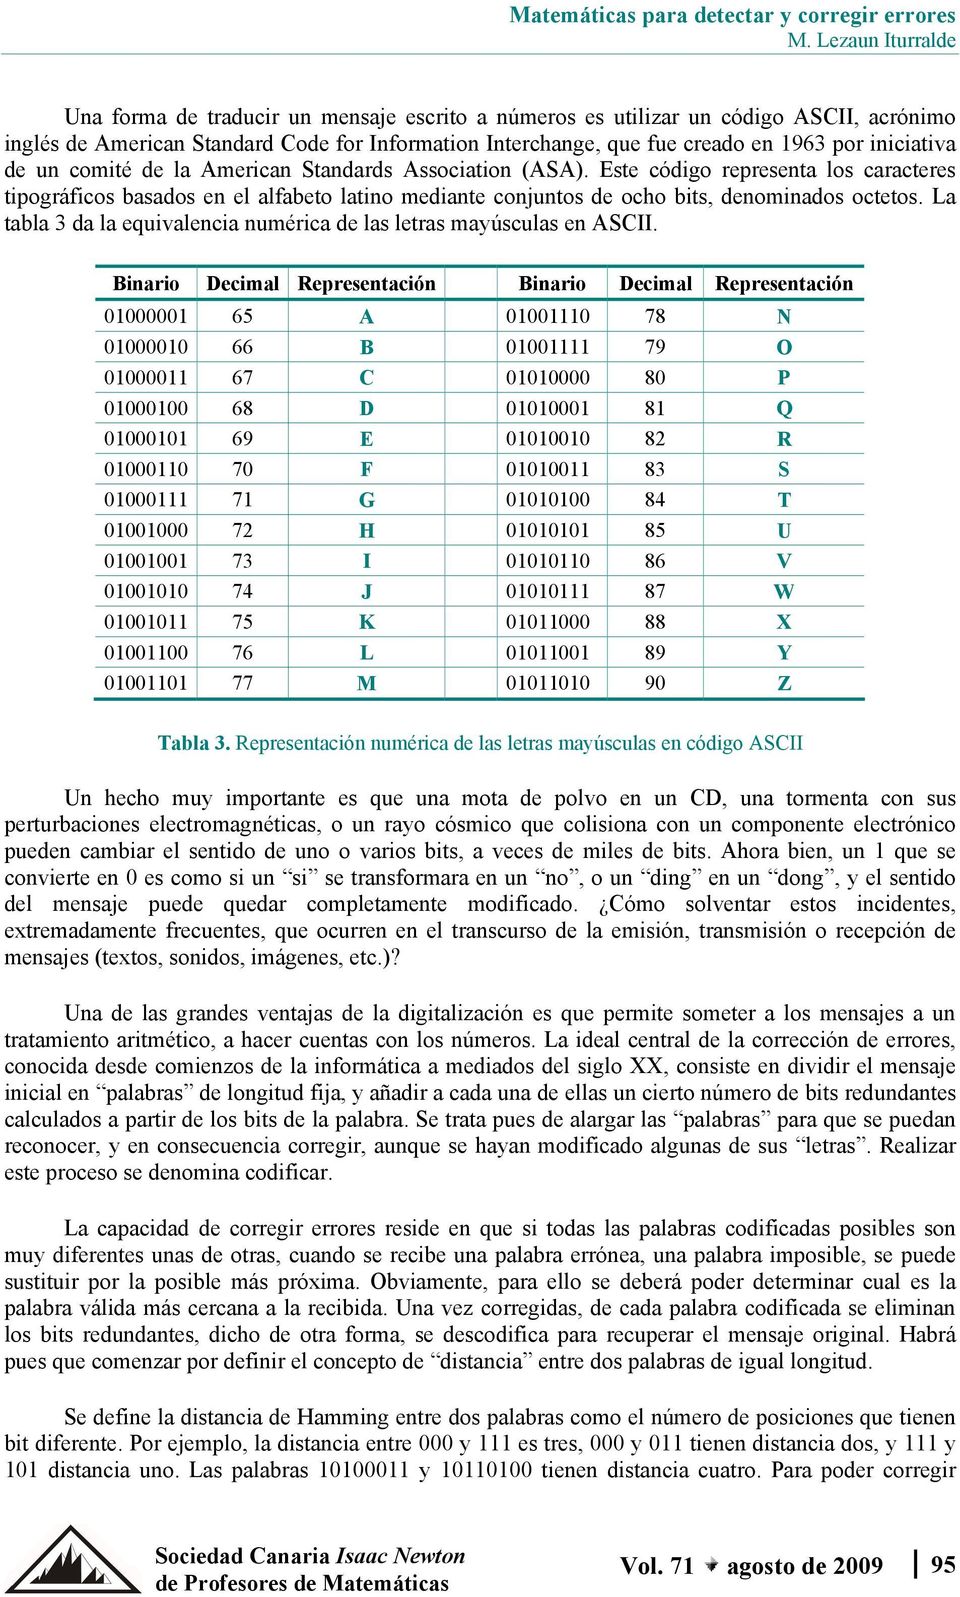 La tabla da la equivalencia numérica de las letras mayúsculas en ASCII.